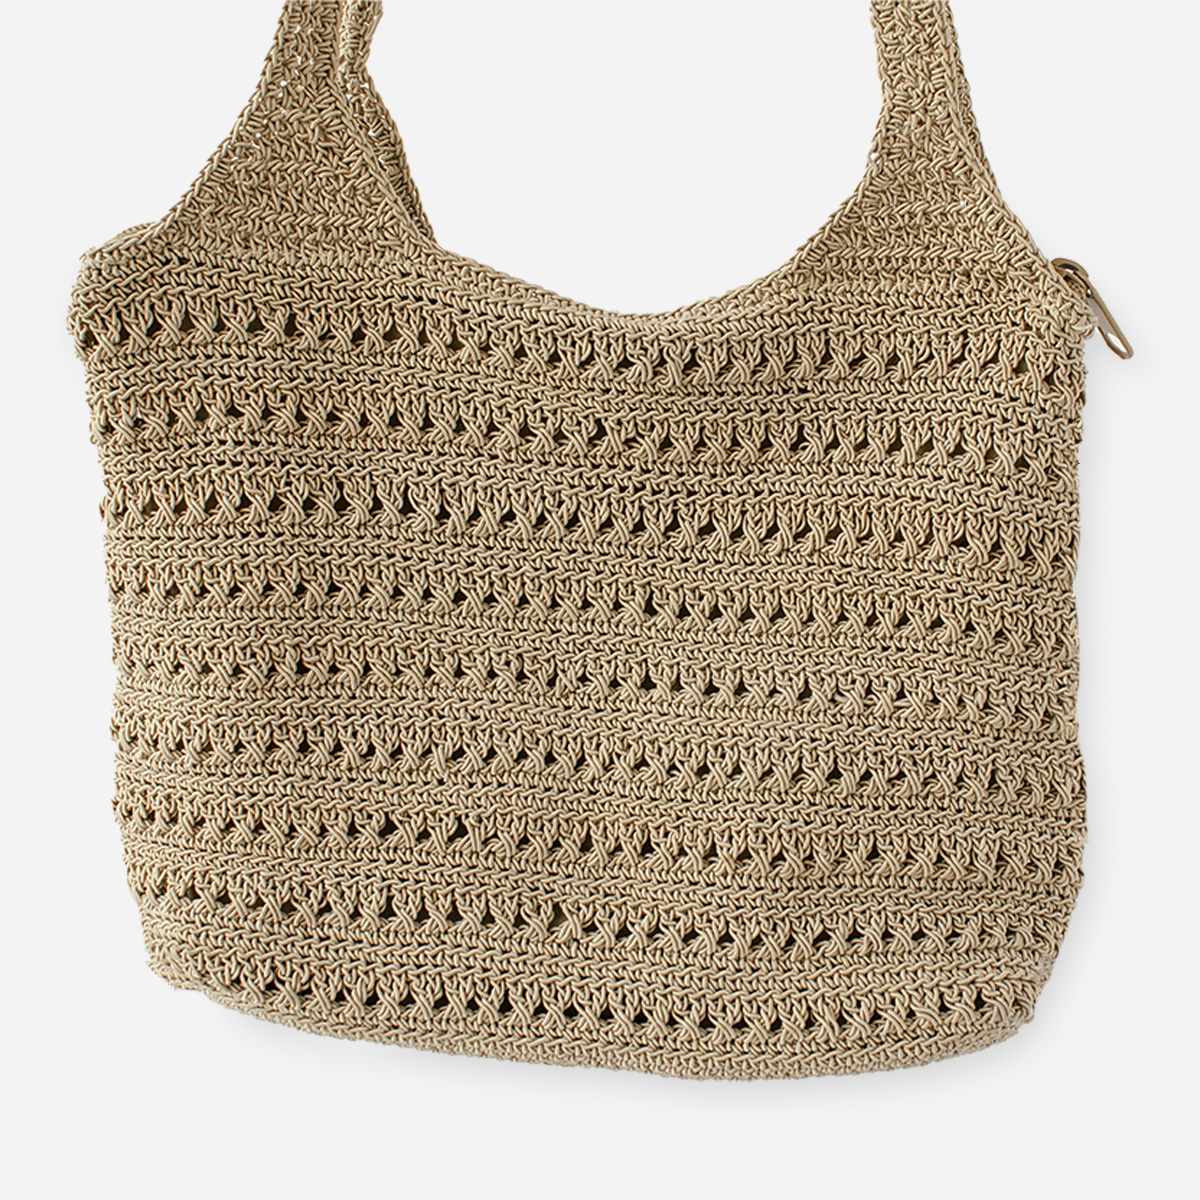 Tan crochet handbag